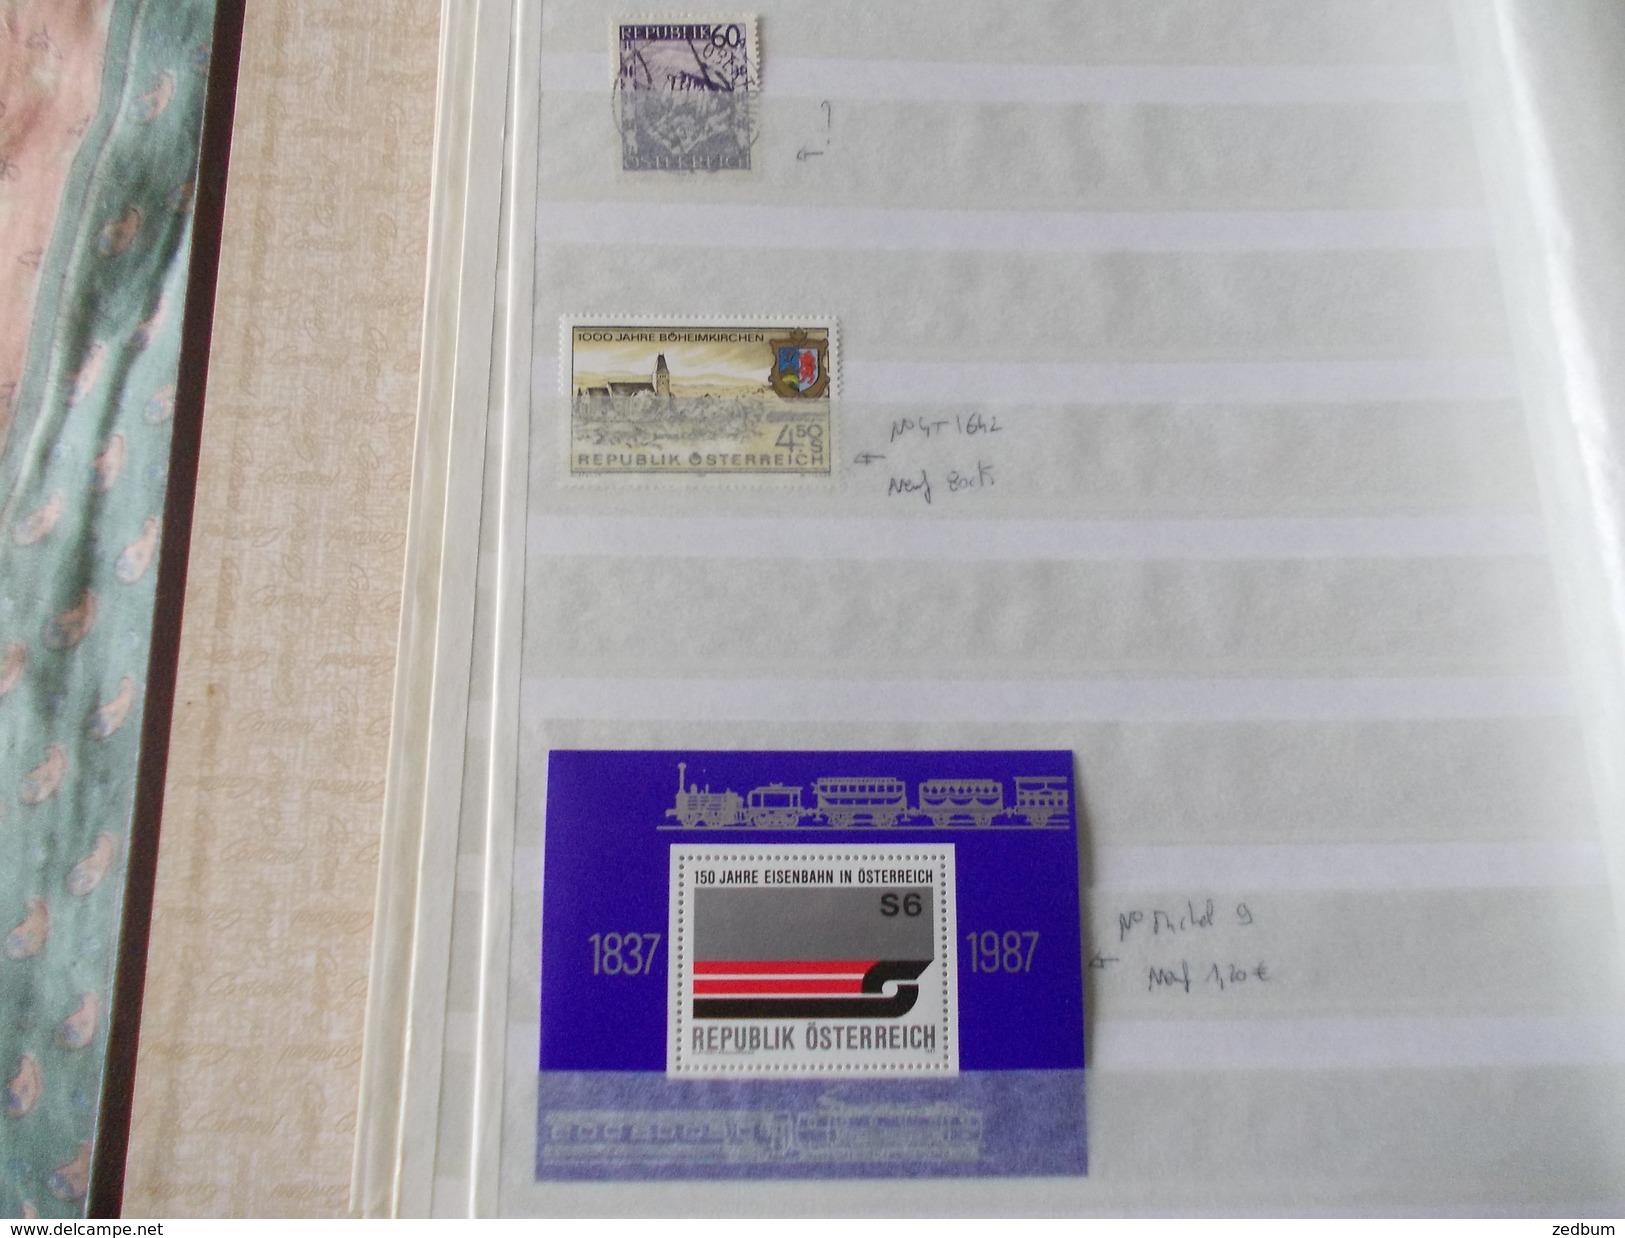 ALBUM 1 collection de timbres avec pour thème le chemin de fer train de tout pays valeur 338.70 &euro;